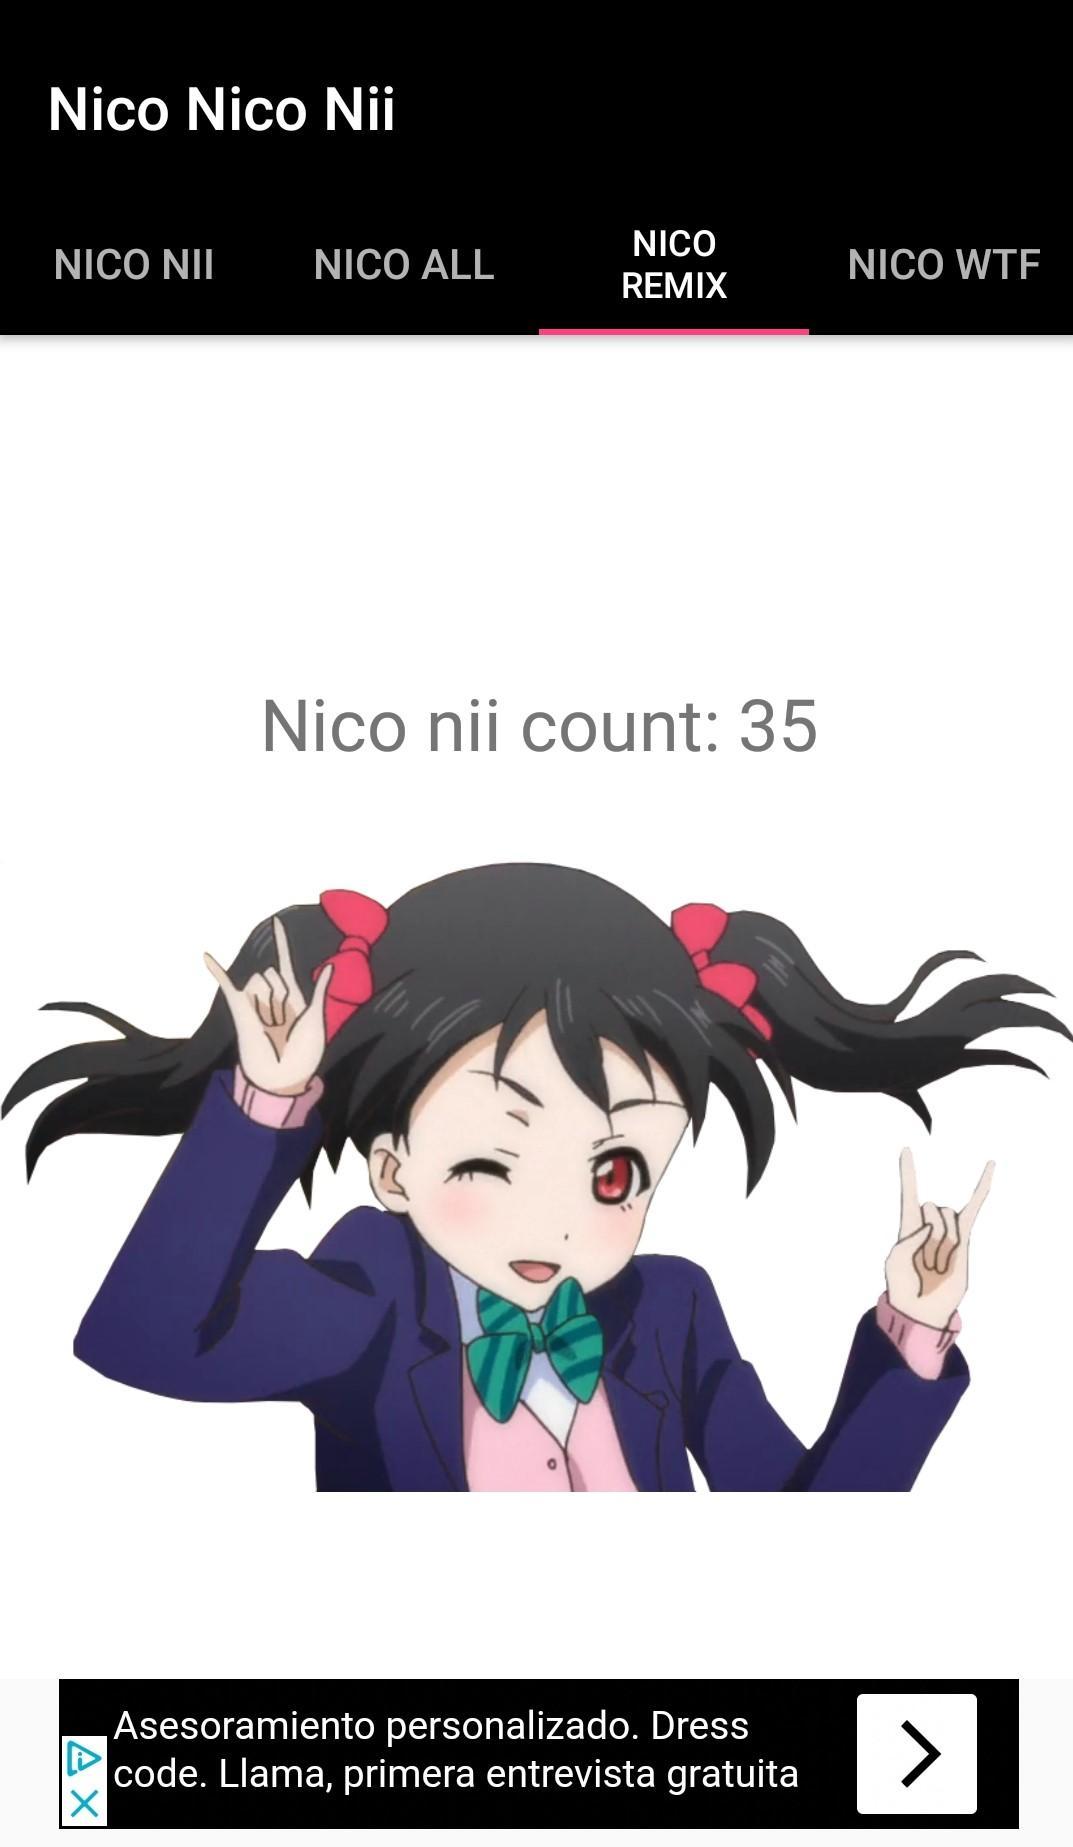 Nico Nico Nii Anime Sounds For Android Apk Download